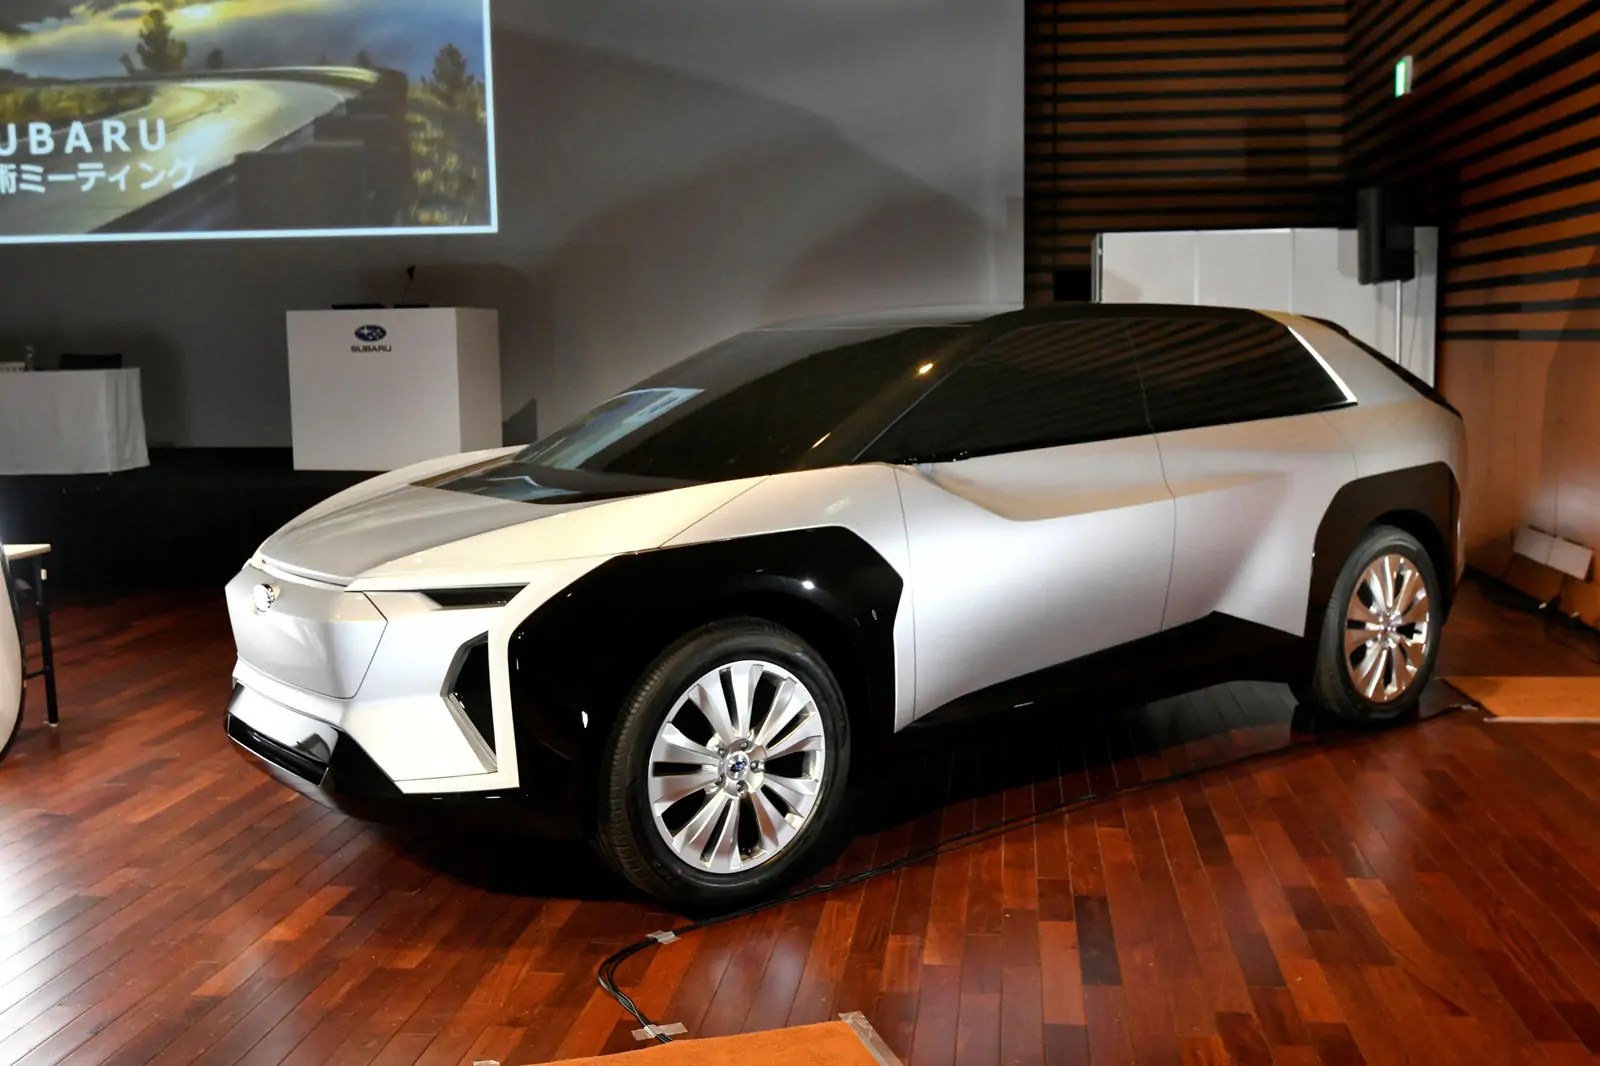 تويوتا تقدم سيارة دفع رباعي كهربائية متوسطة الحجم